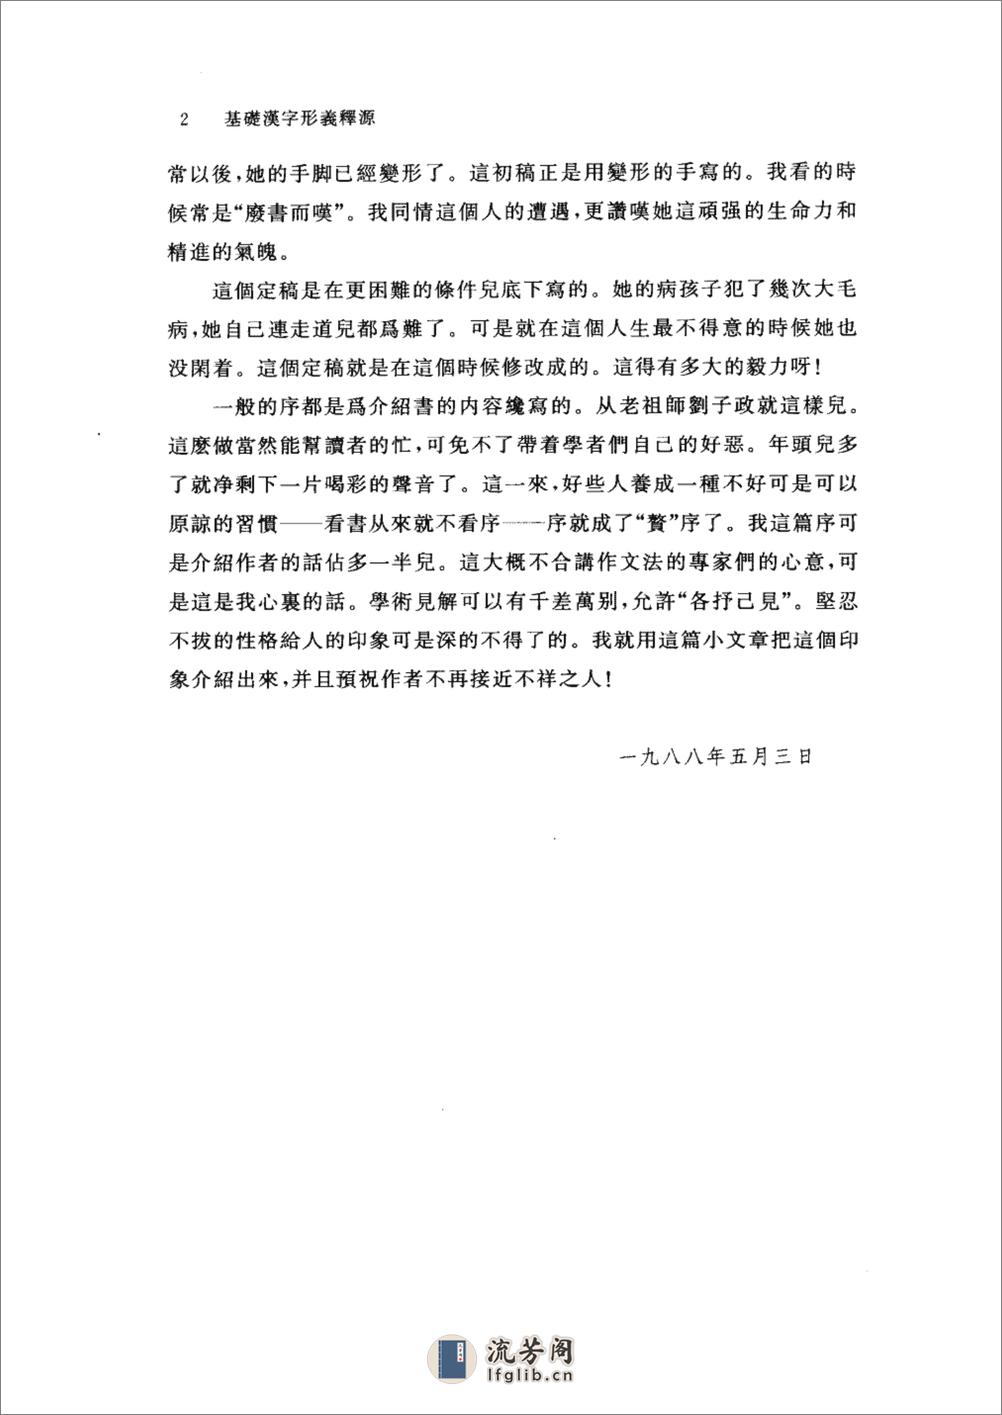 基础汉字形义释源 - 第11页预览图